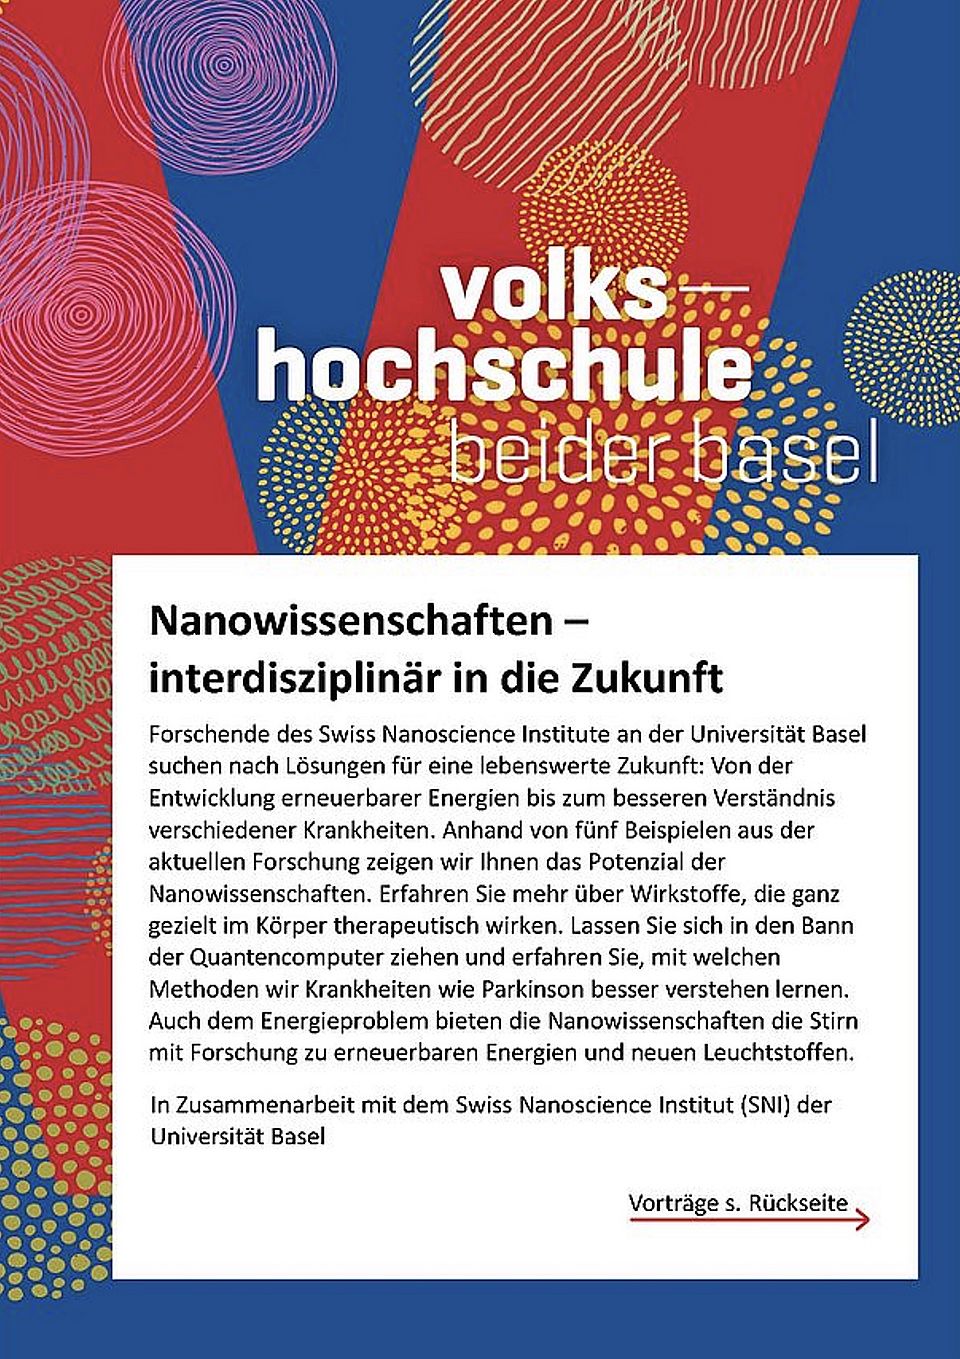 Announcement Volkshochschule